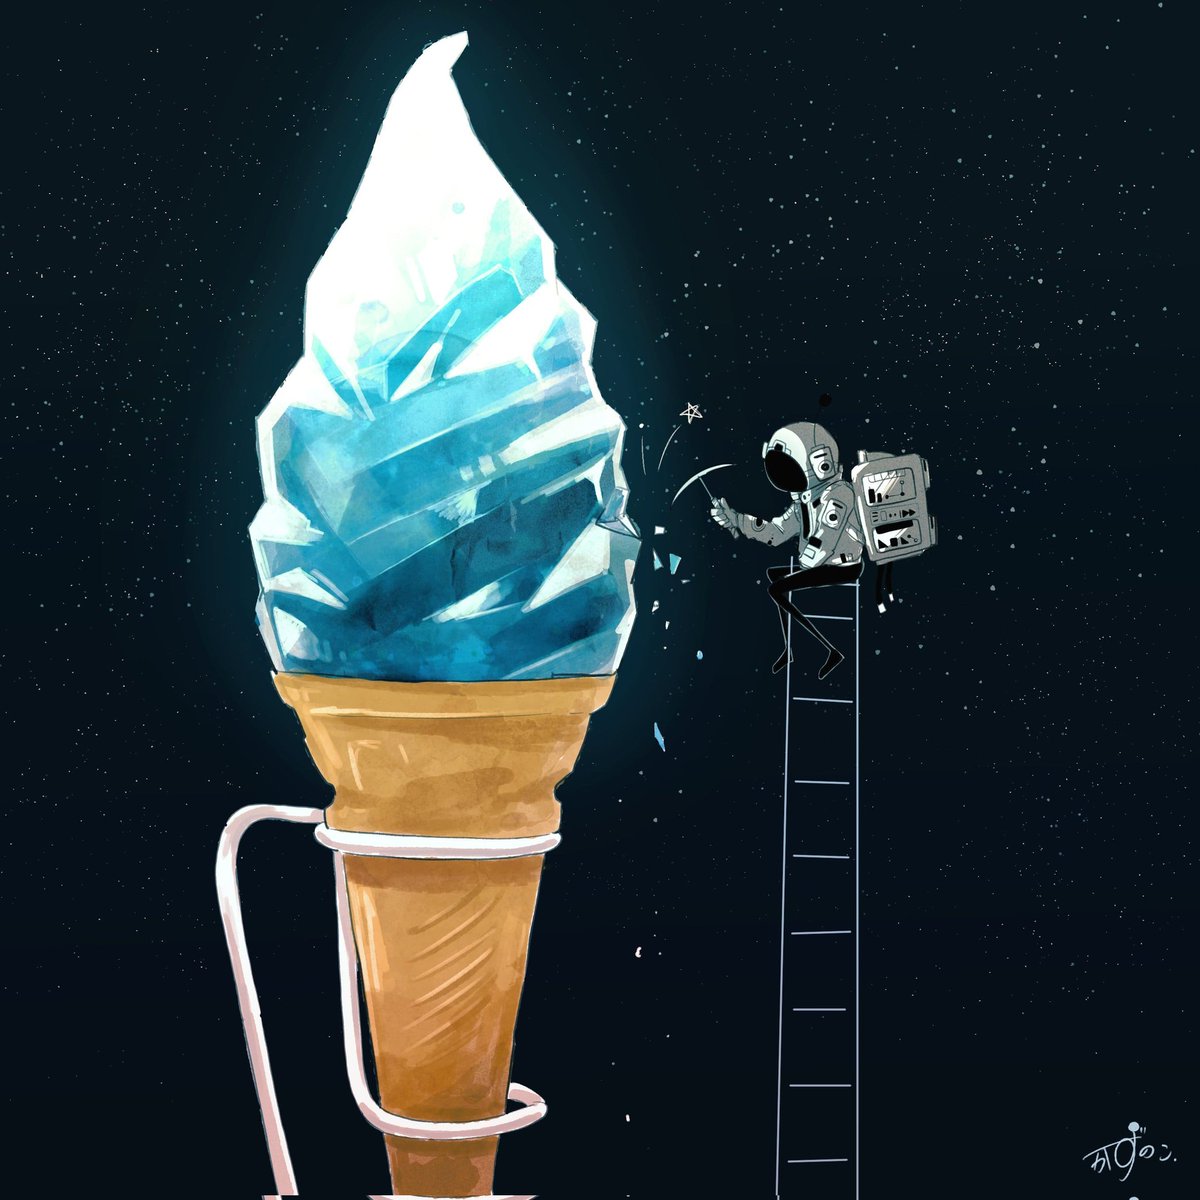 「暑いからアイスとかの絵まとめ 」|かずのこのイラスト